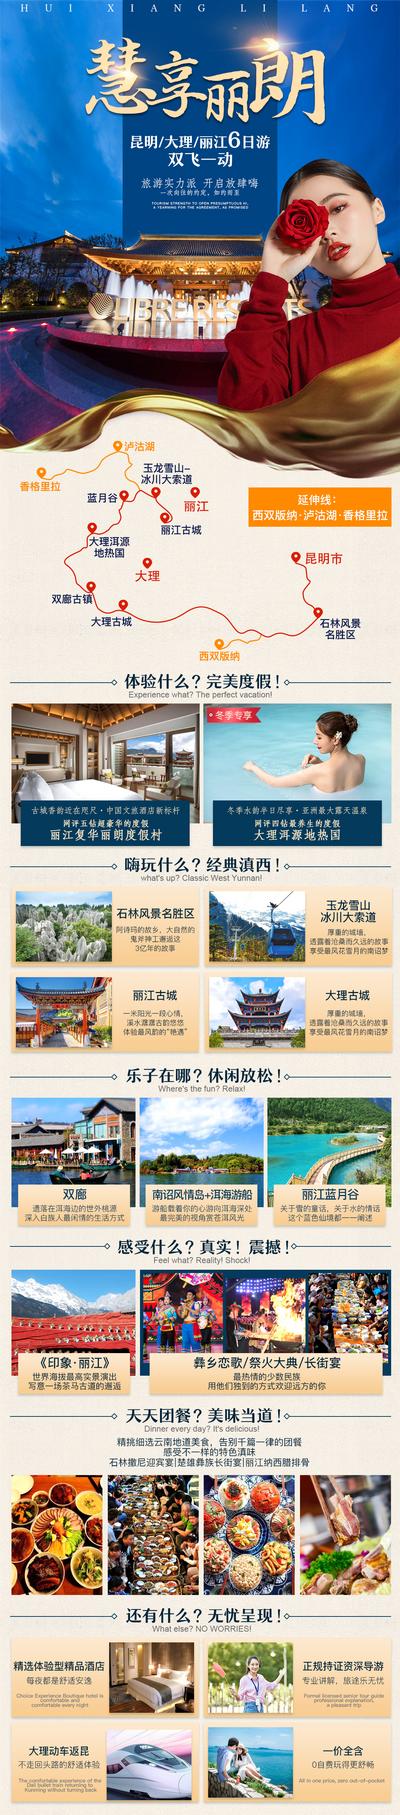 南门网 广告 海报 电商 丽江 长图 旅游 行程